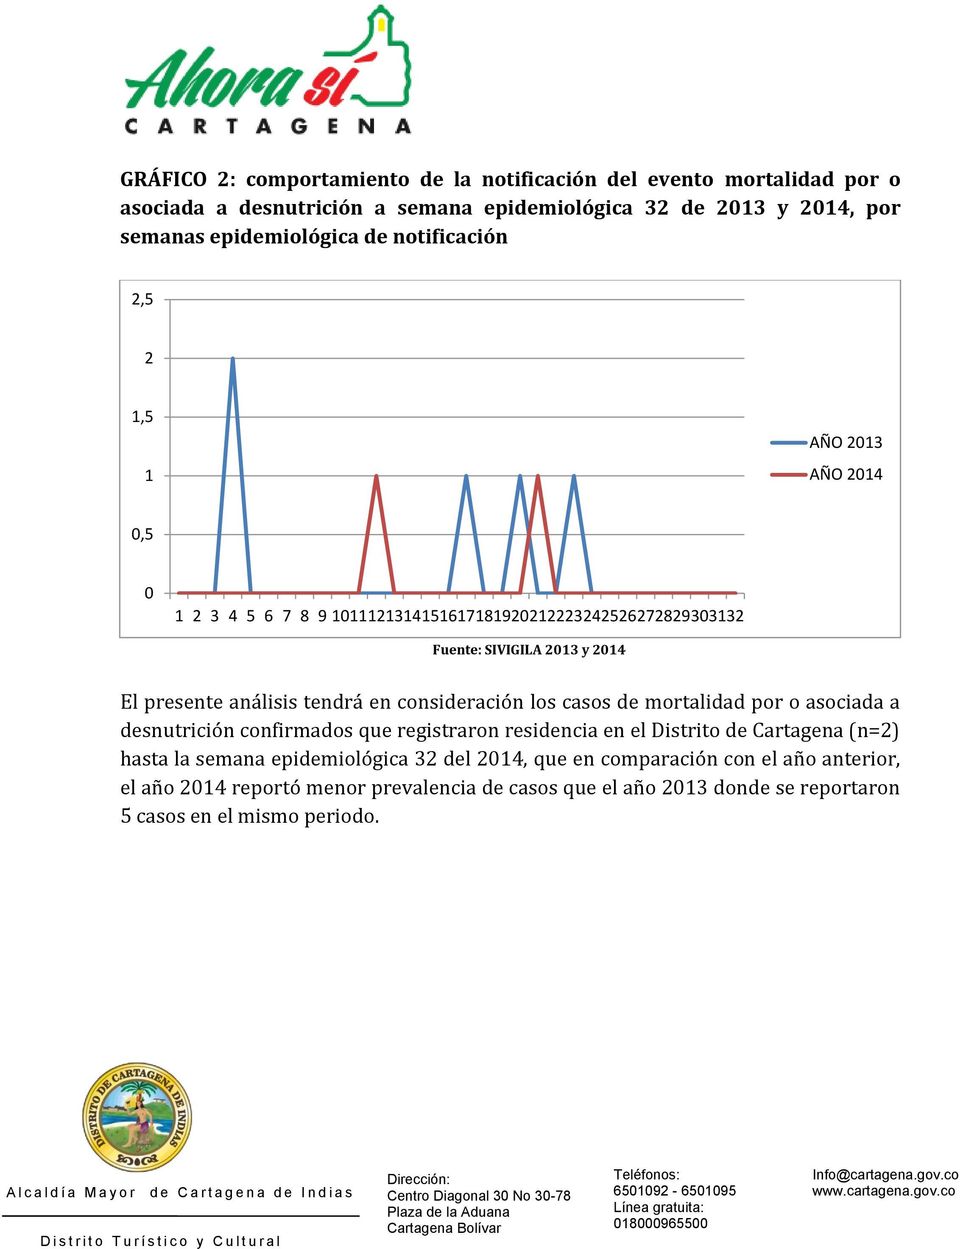 tendrá en consideración los casos de mortalidad por o asociada a desnutrición confirmados que registraron residencia en el Distrito de Cartagena (n=2) hasta la semana